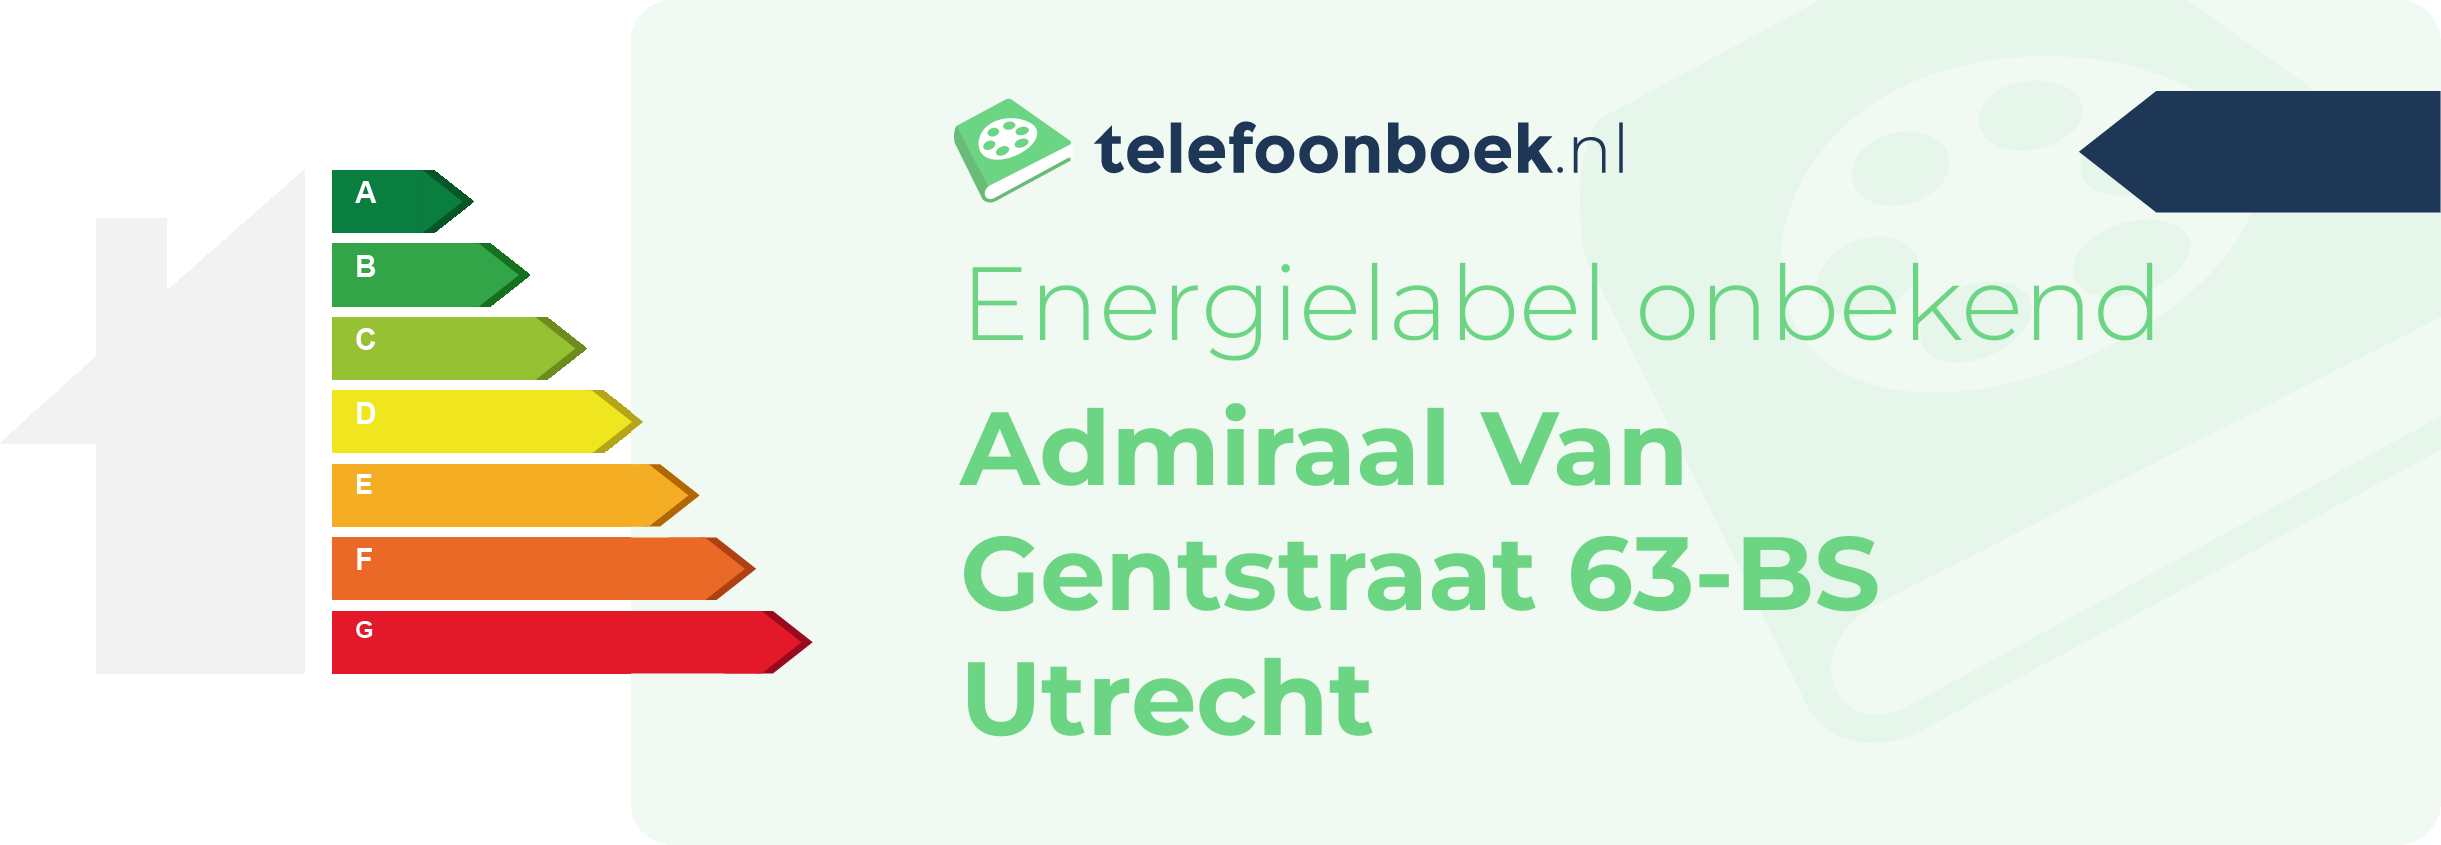 Energielabel Admiraal Van Gentstraat 63-BS Utrecht